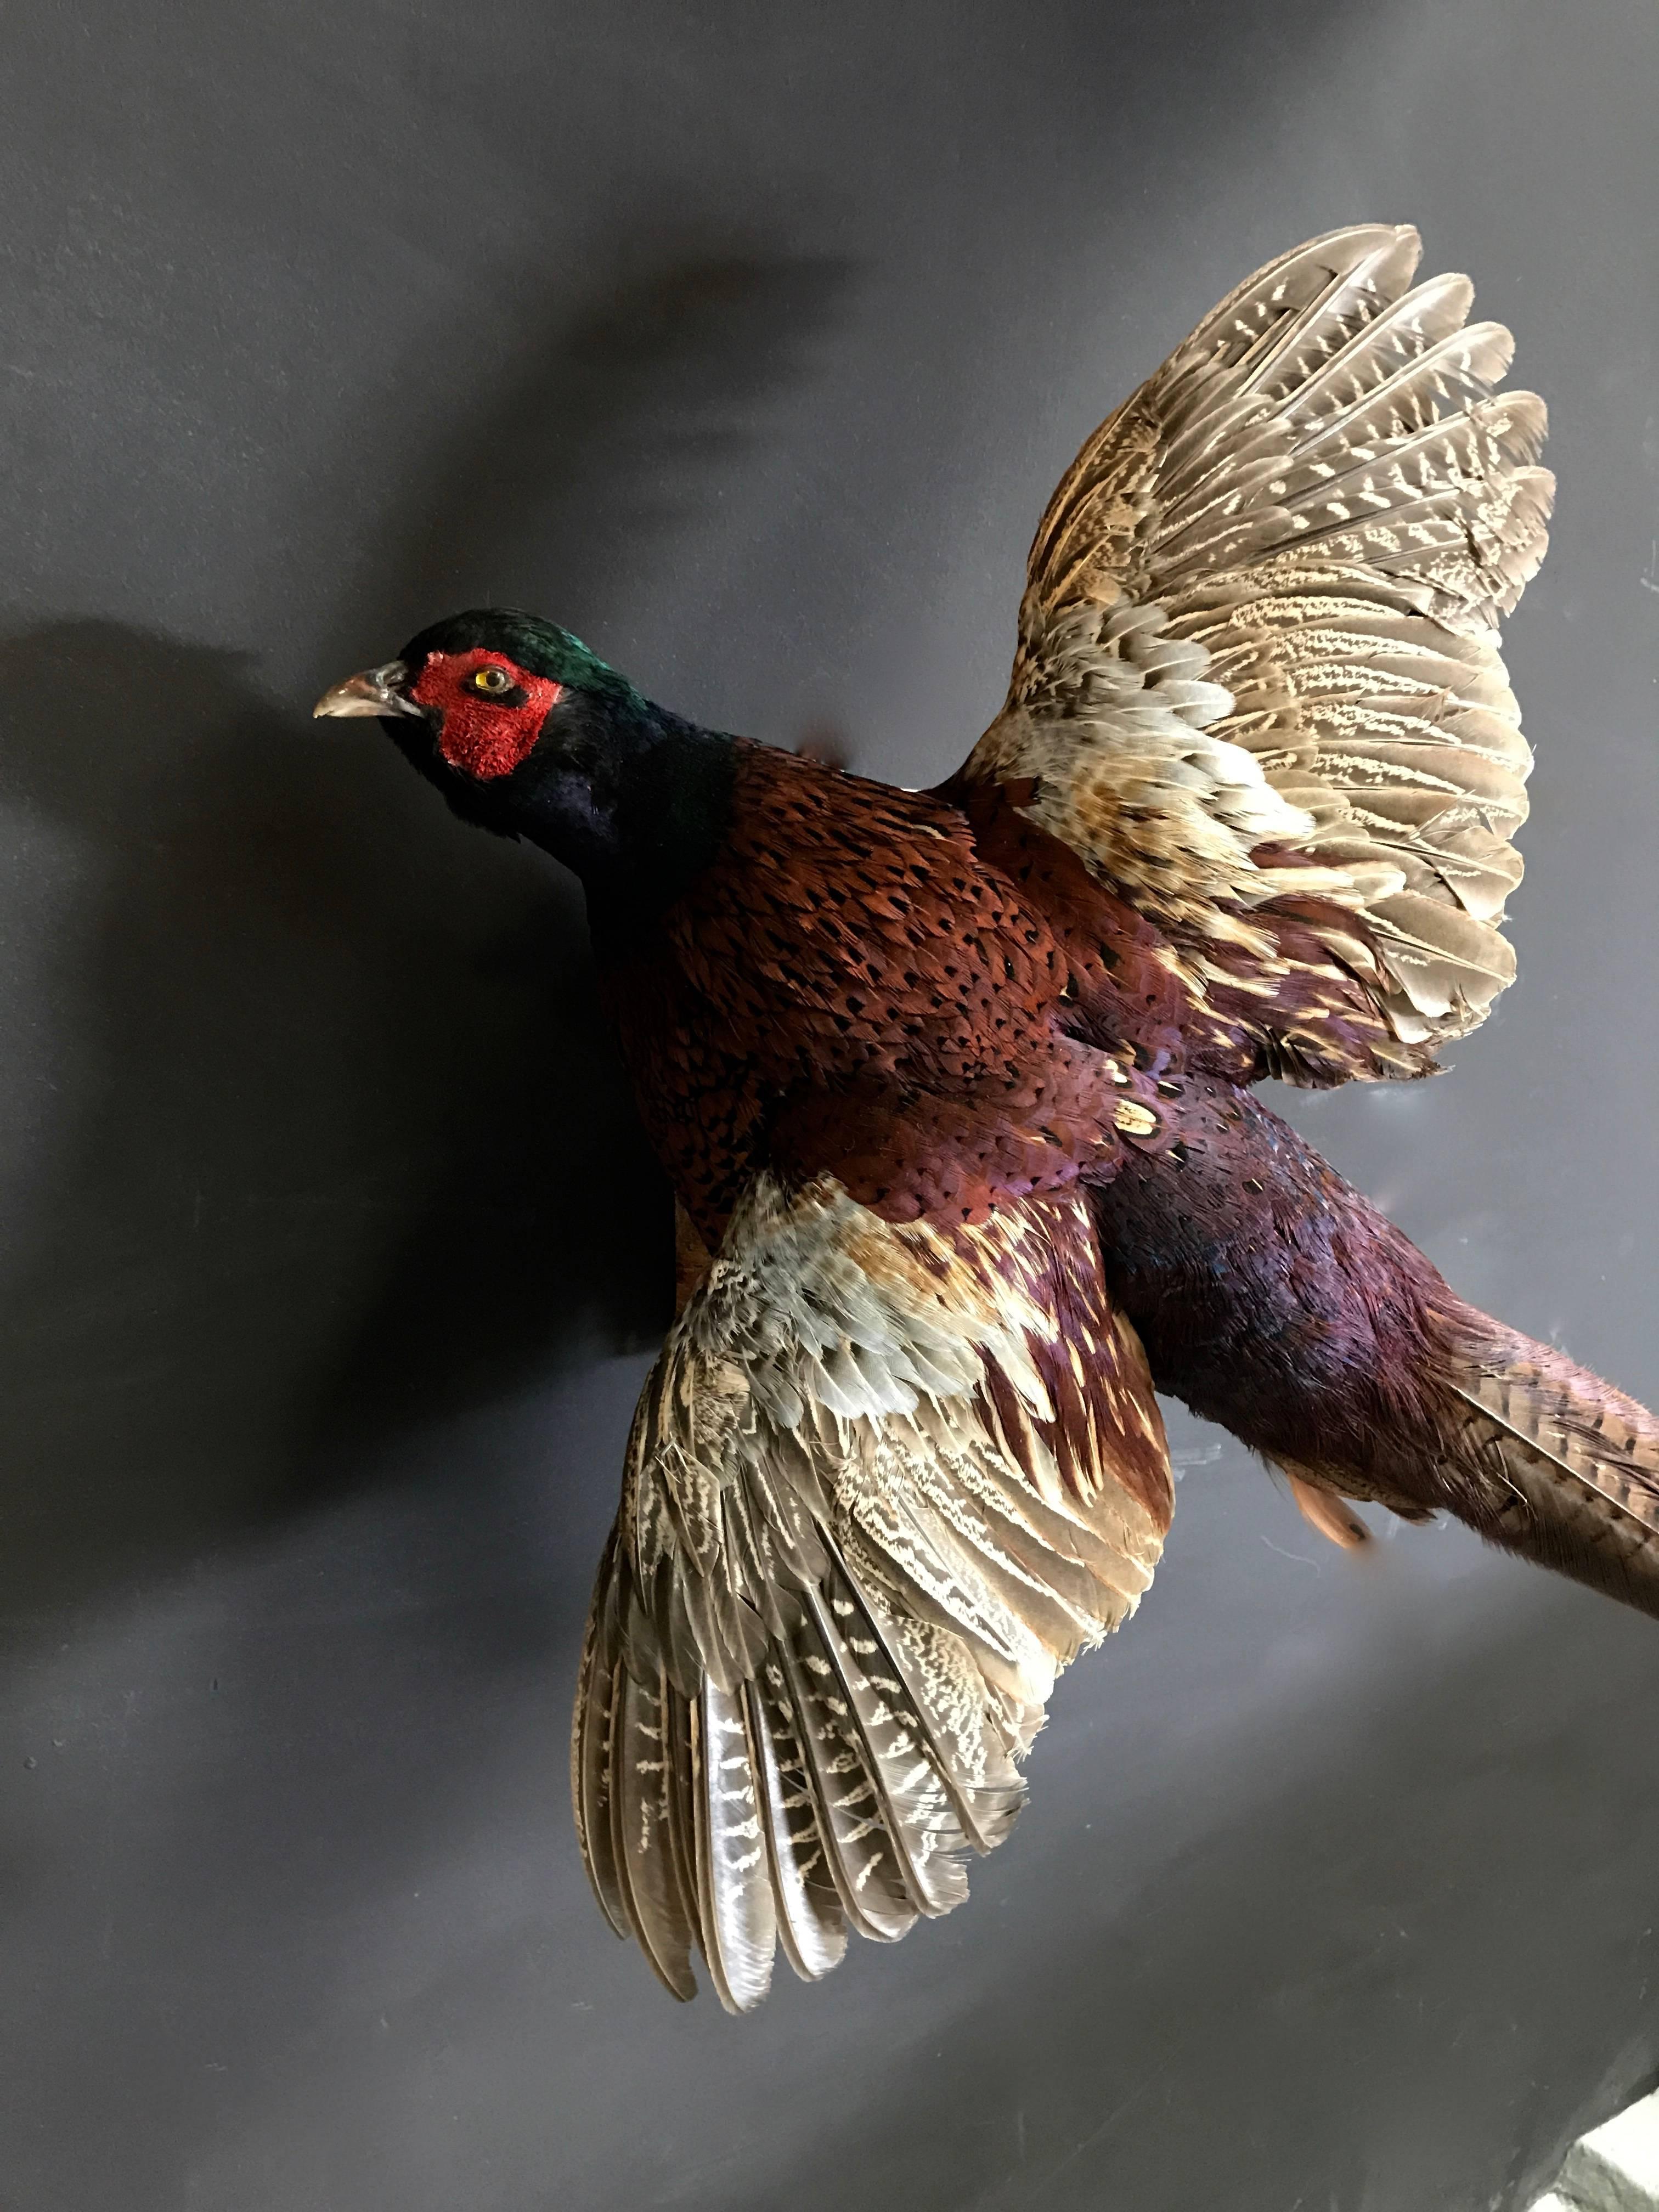 Decorative flying pheasant.
Fresh taxidermy.